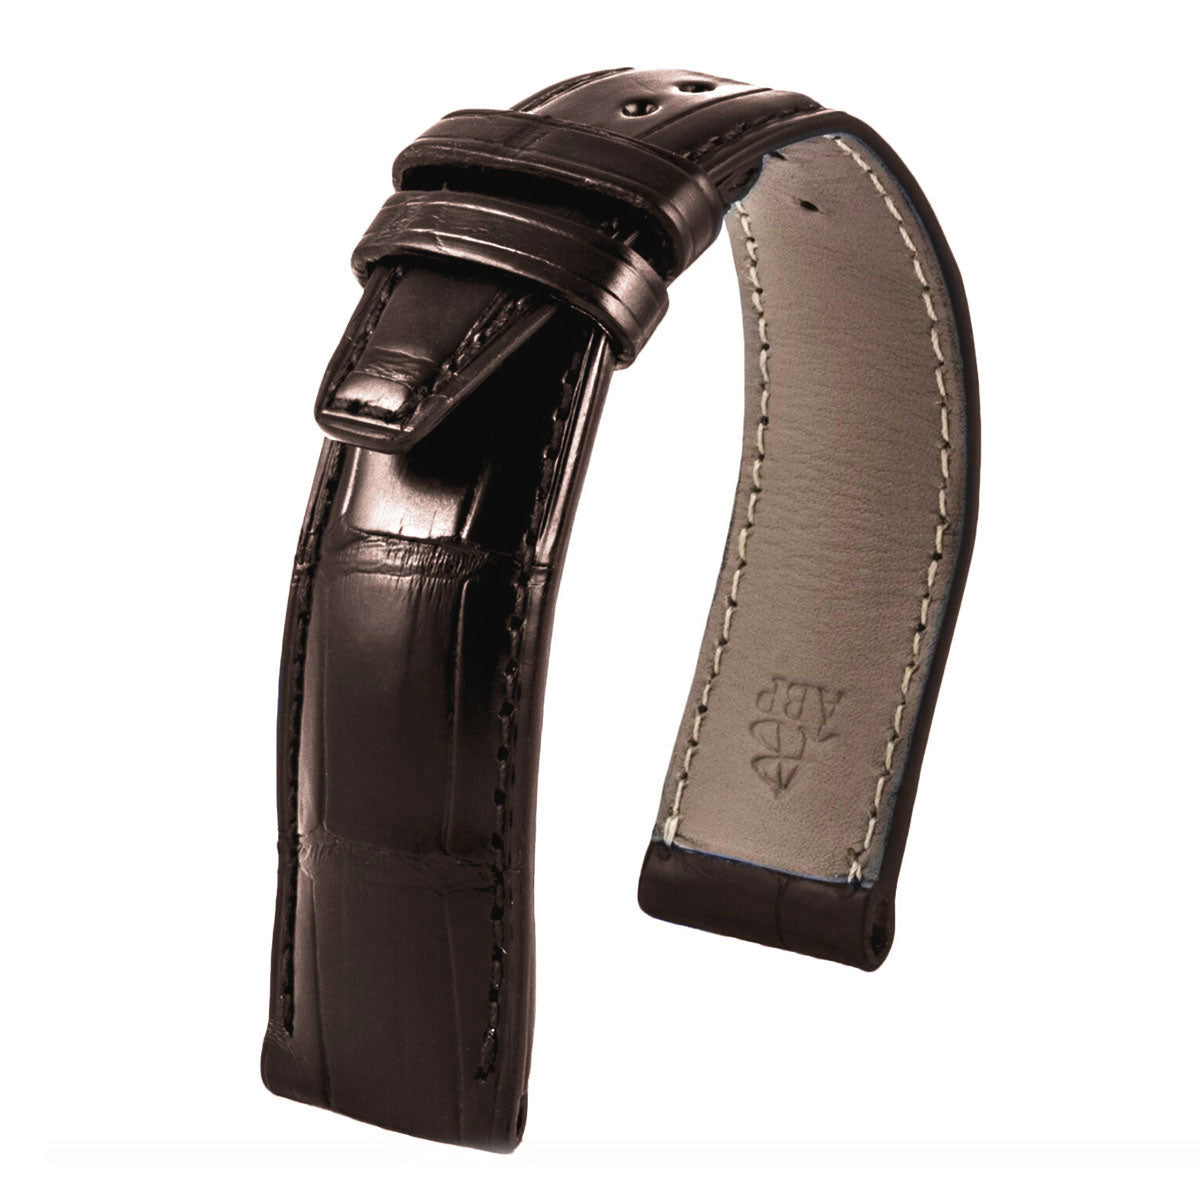 IWC Portofino - Bracelet montre cuir - Alligator (noir, marron, gris, bleu) - watch band leather strap - ABP Concept -